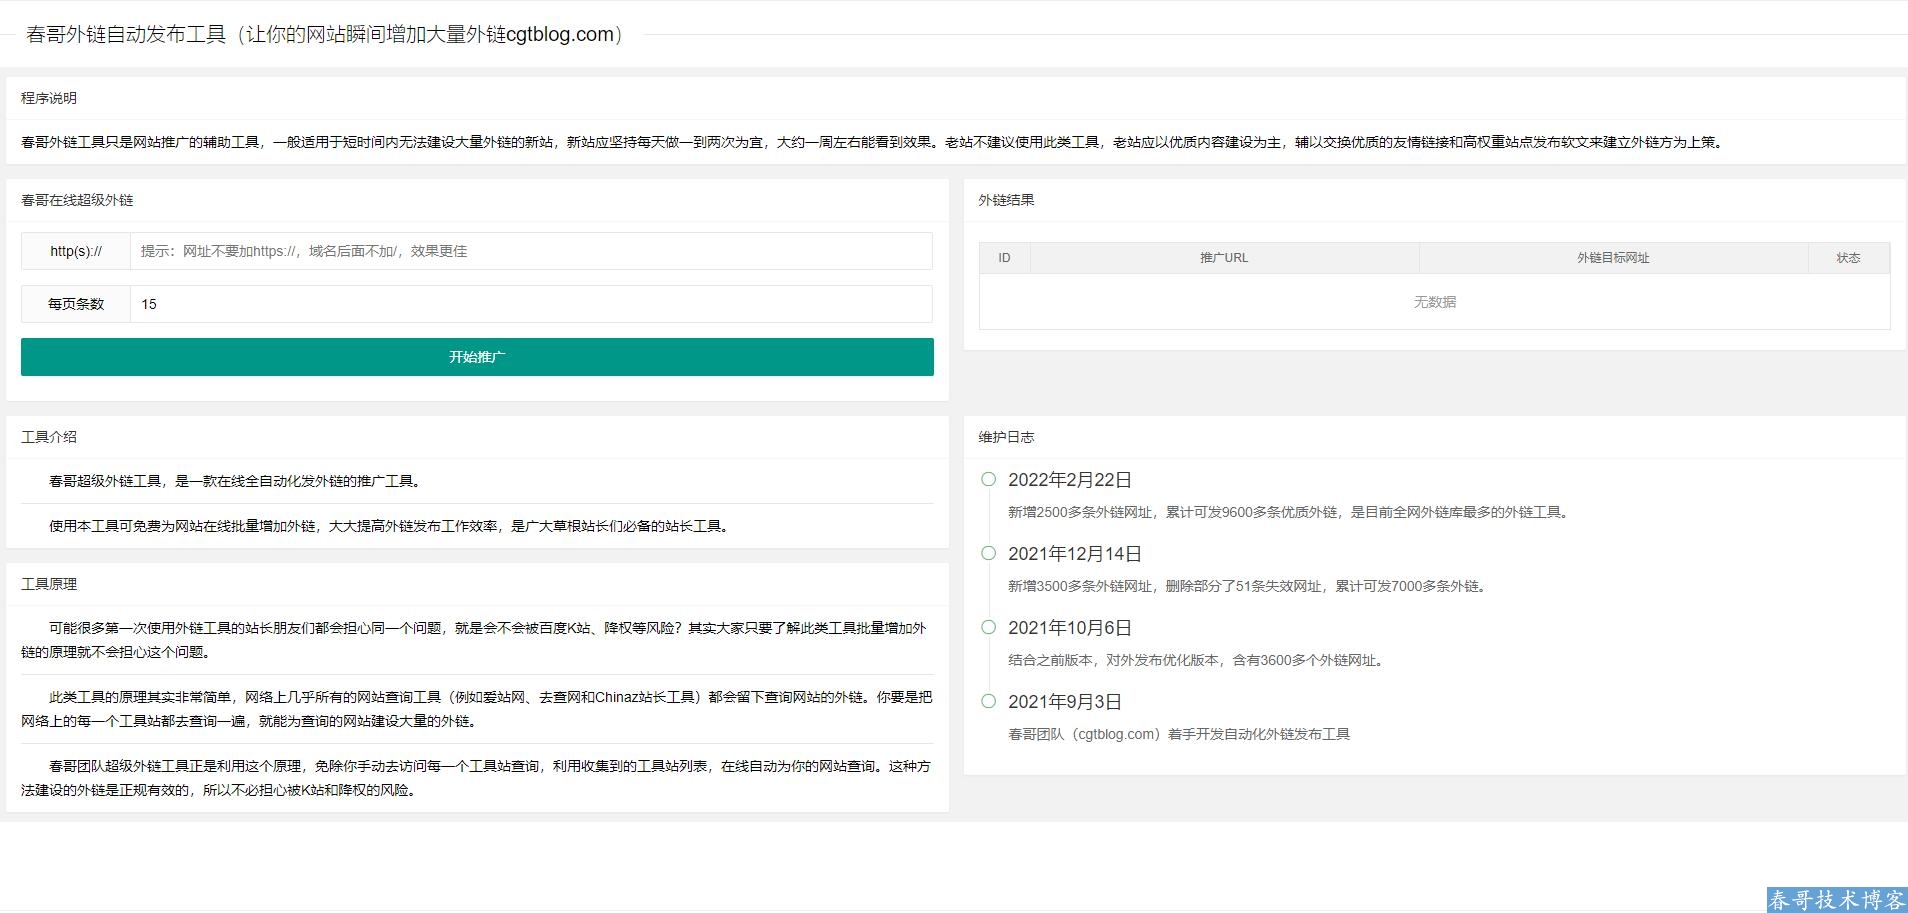 春哥SEO全自动发布外链工具增加网站权重网站源码